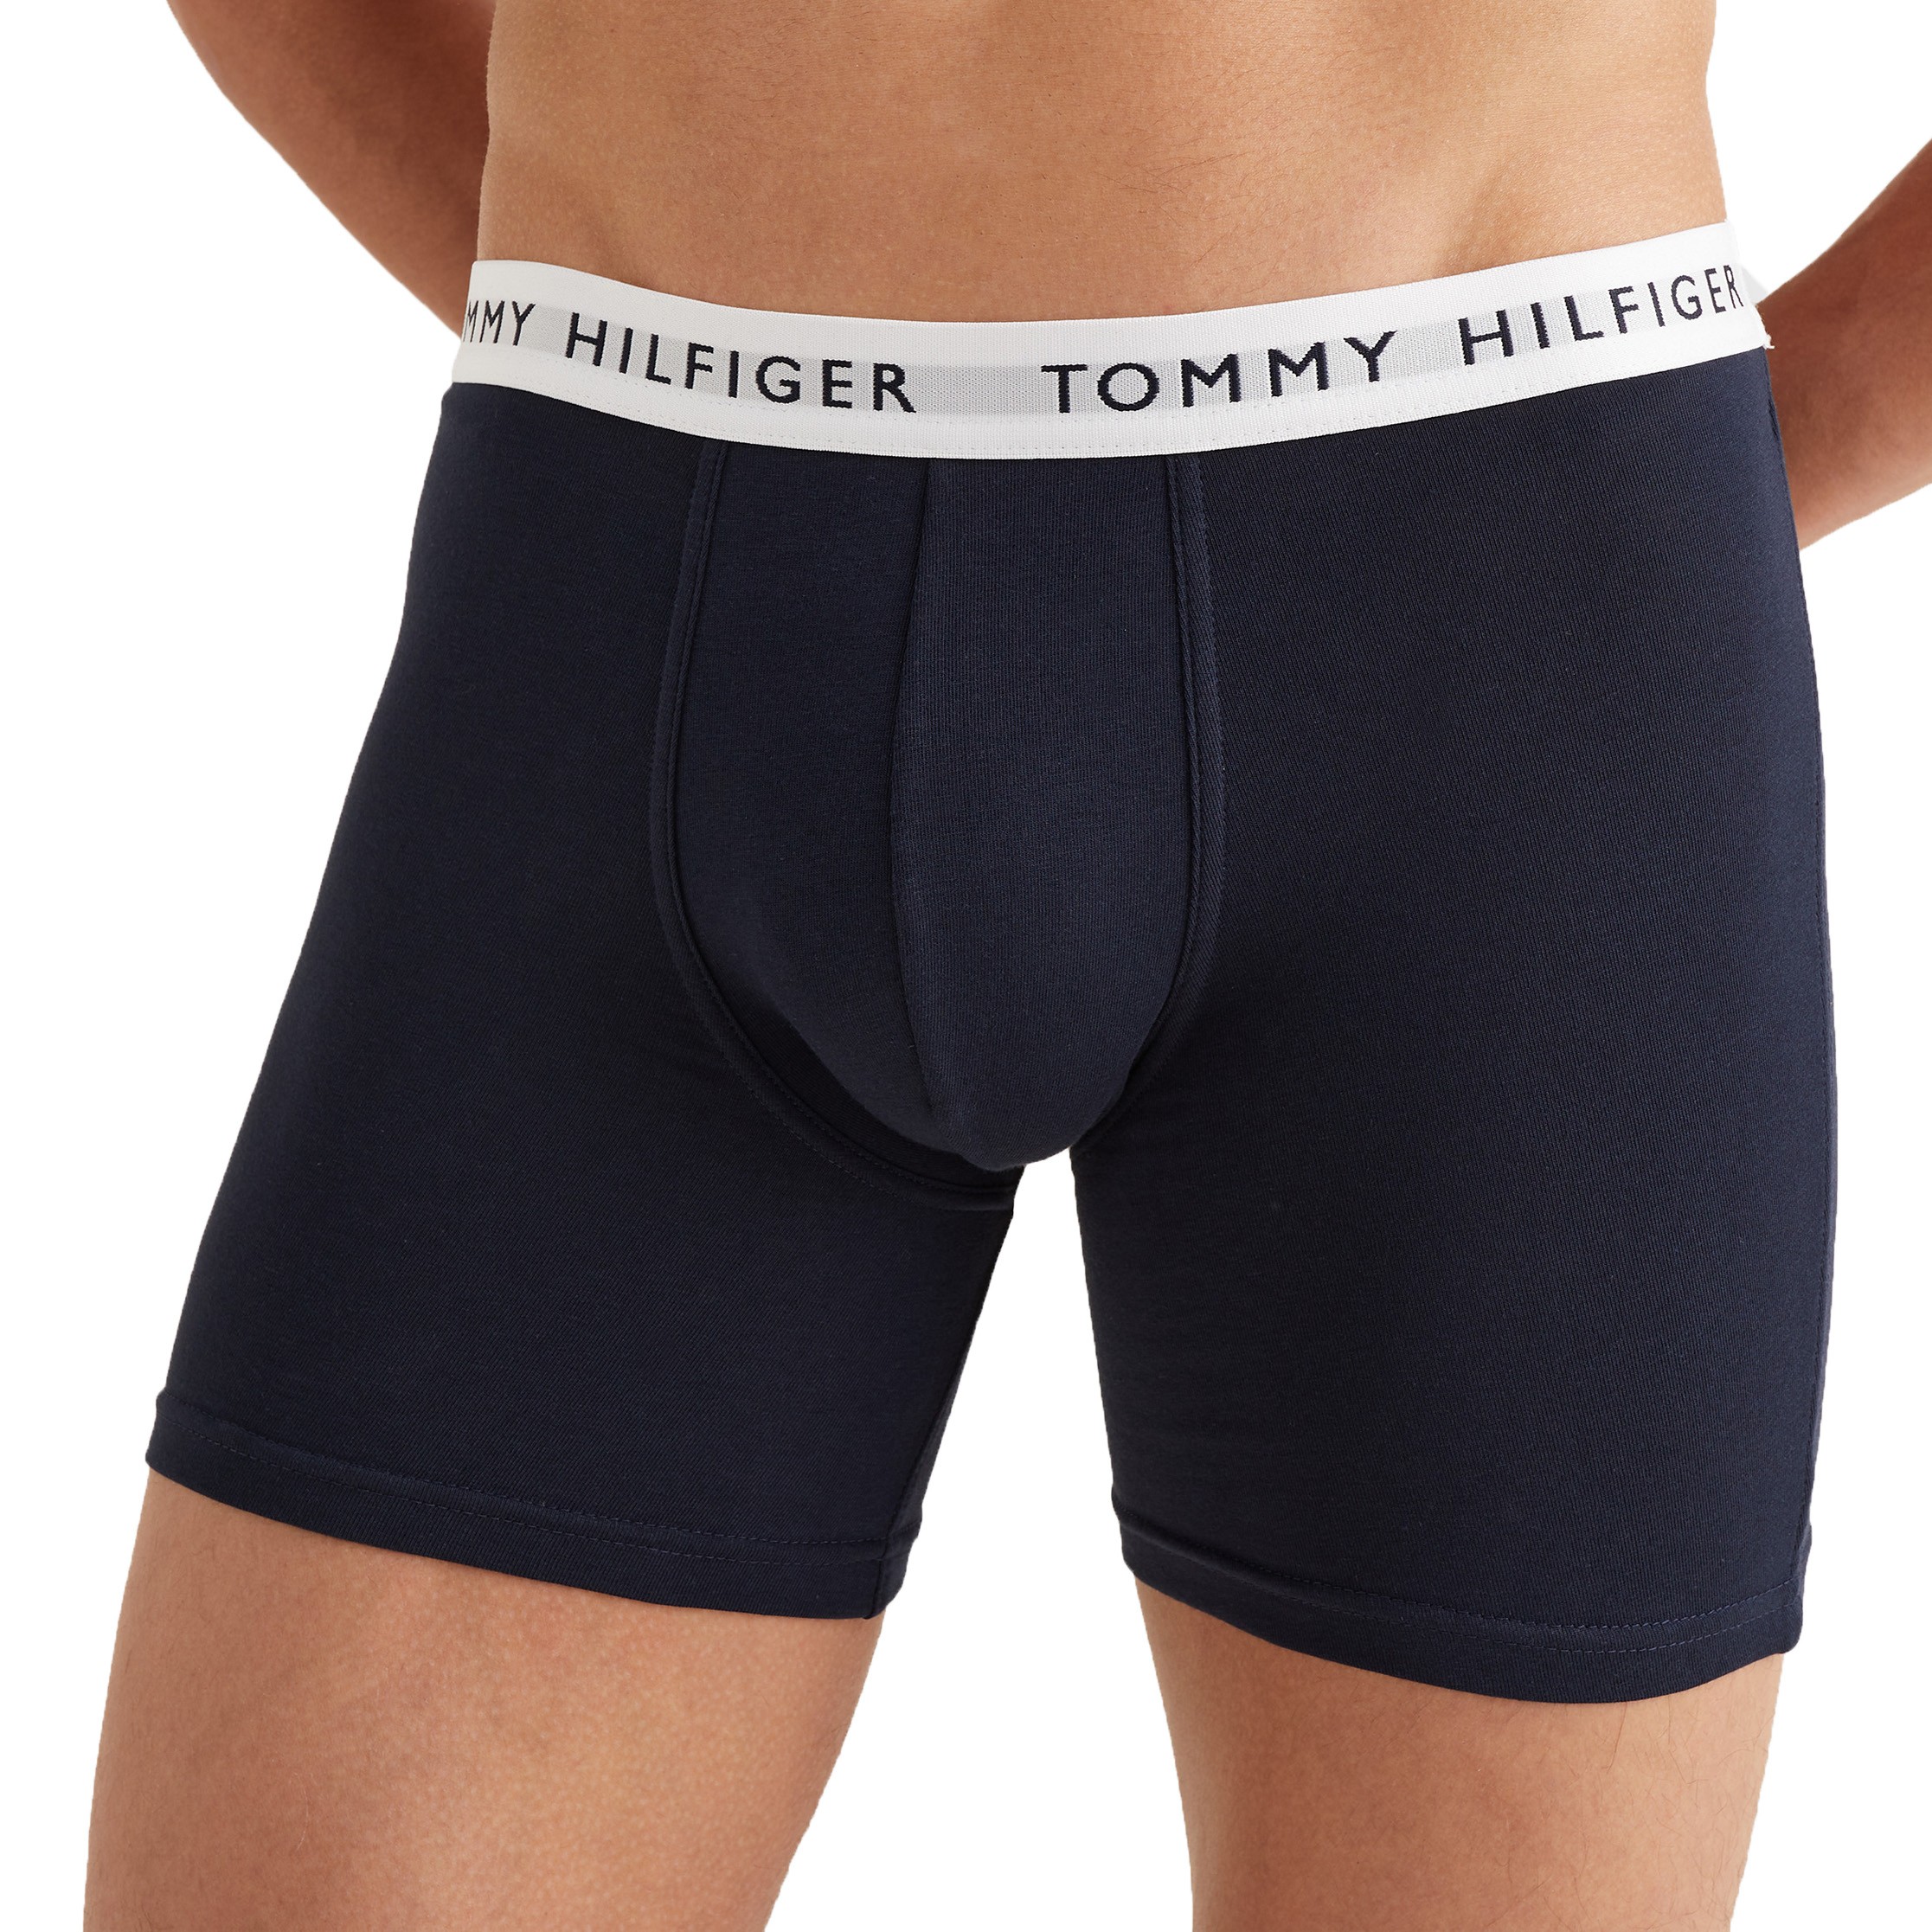 TOMMY HILFIGER - Men's 3-pack logo boxer briefs 